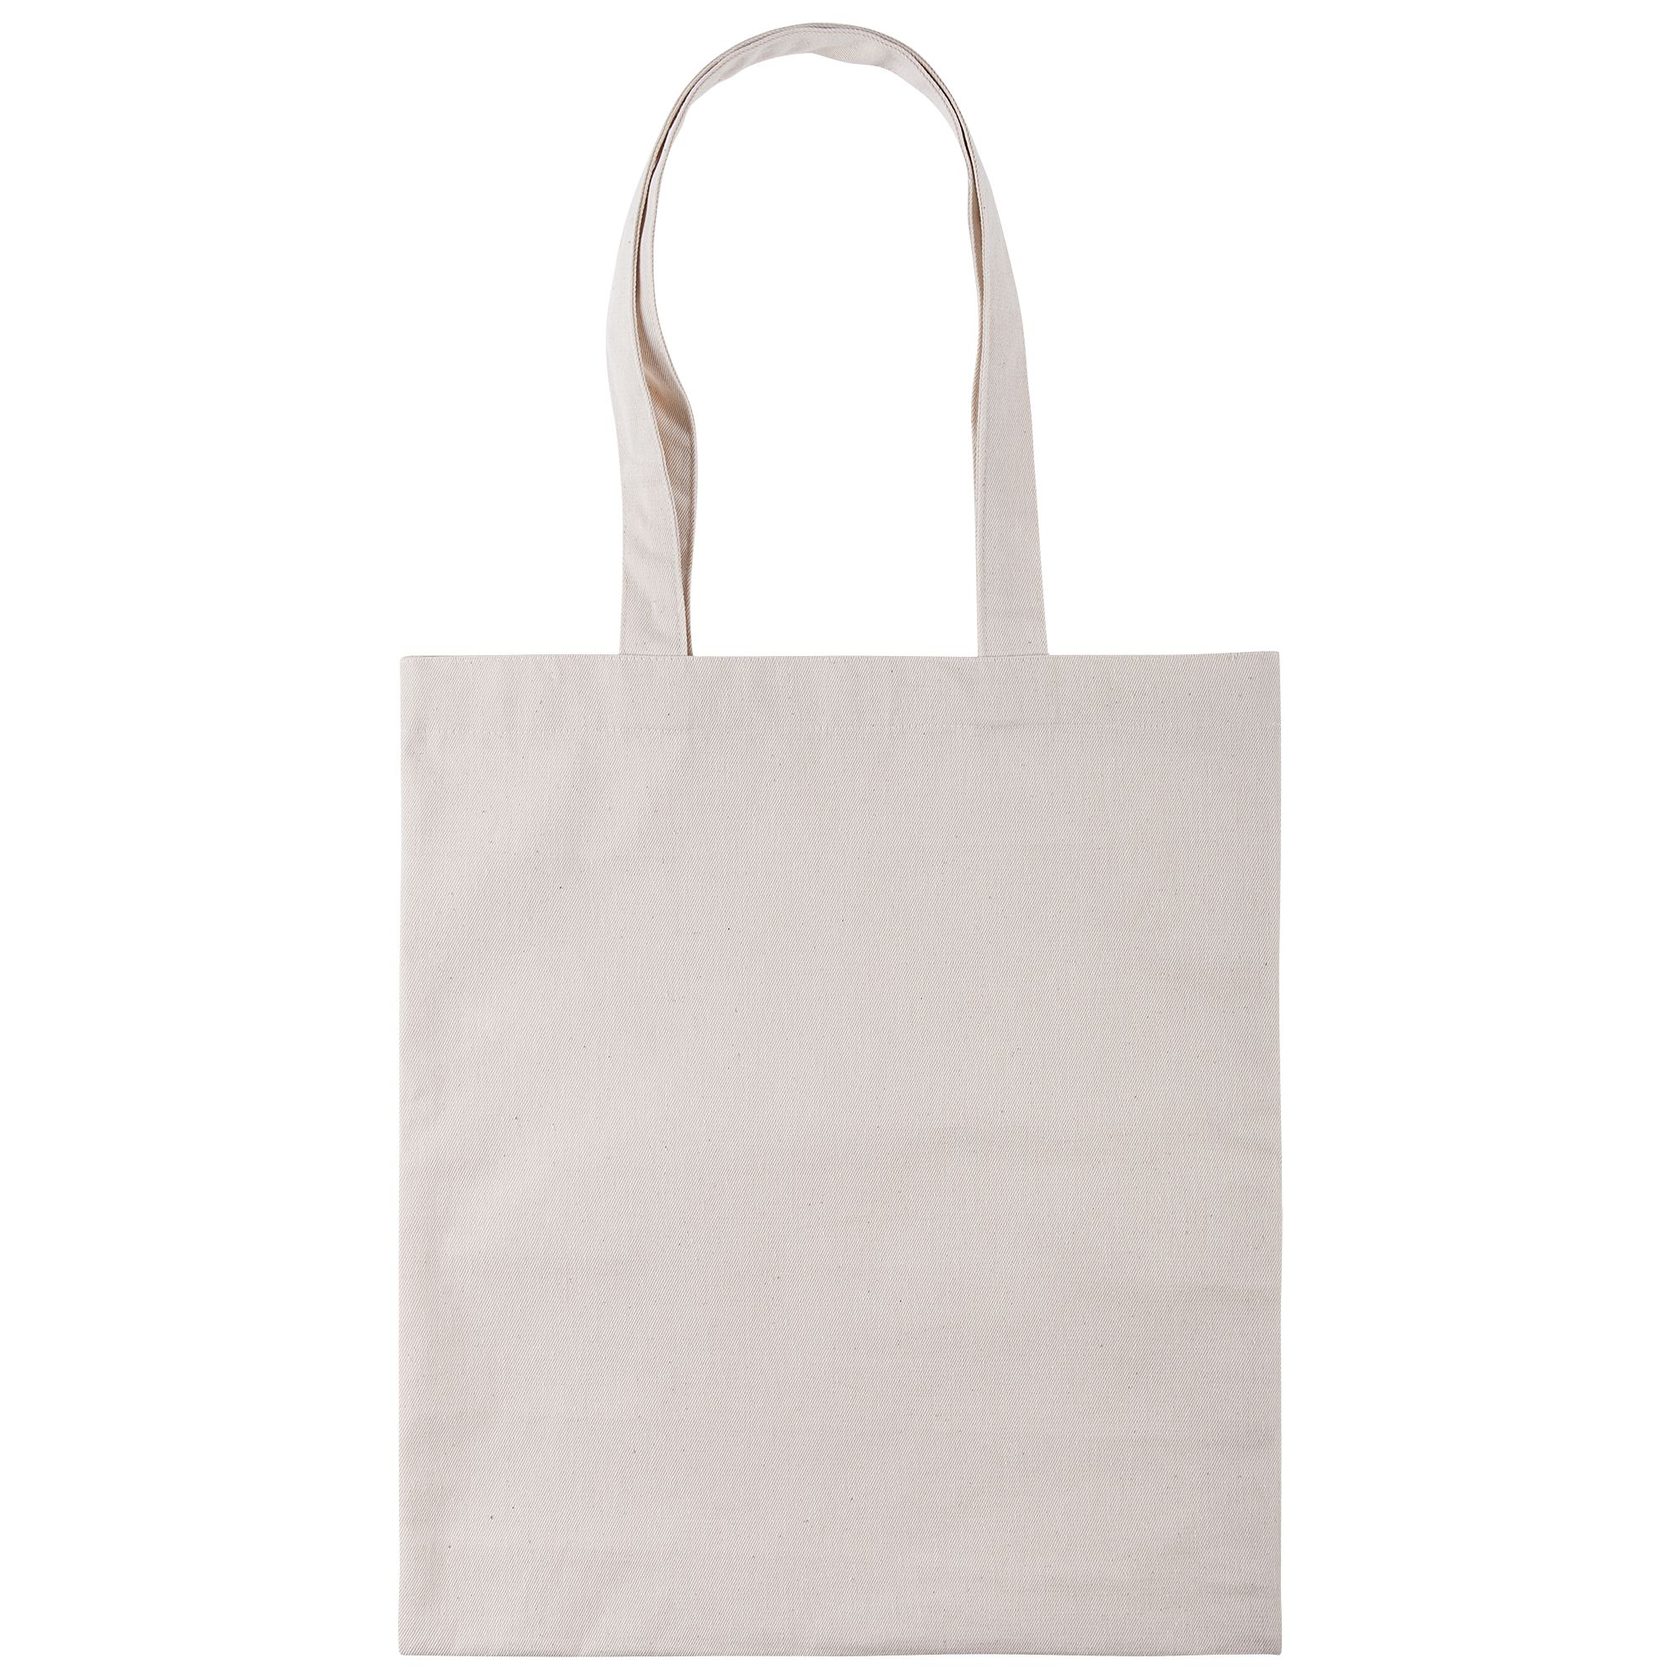 Прочная сумка-шоппер из хлопка саржевого плетения. оптом  или .